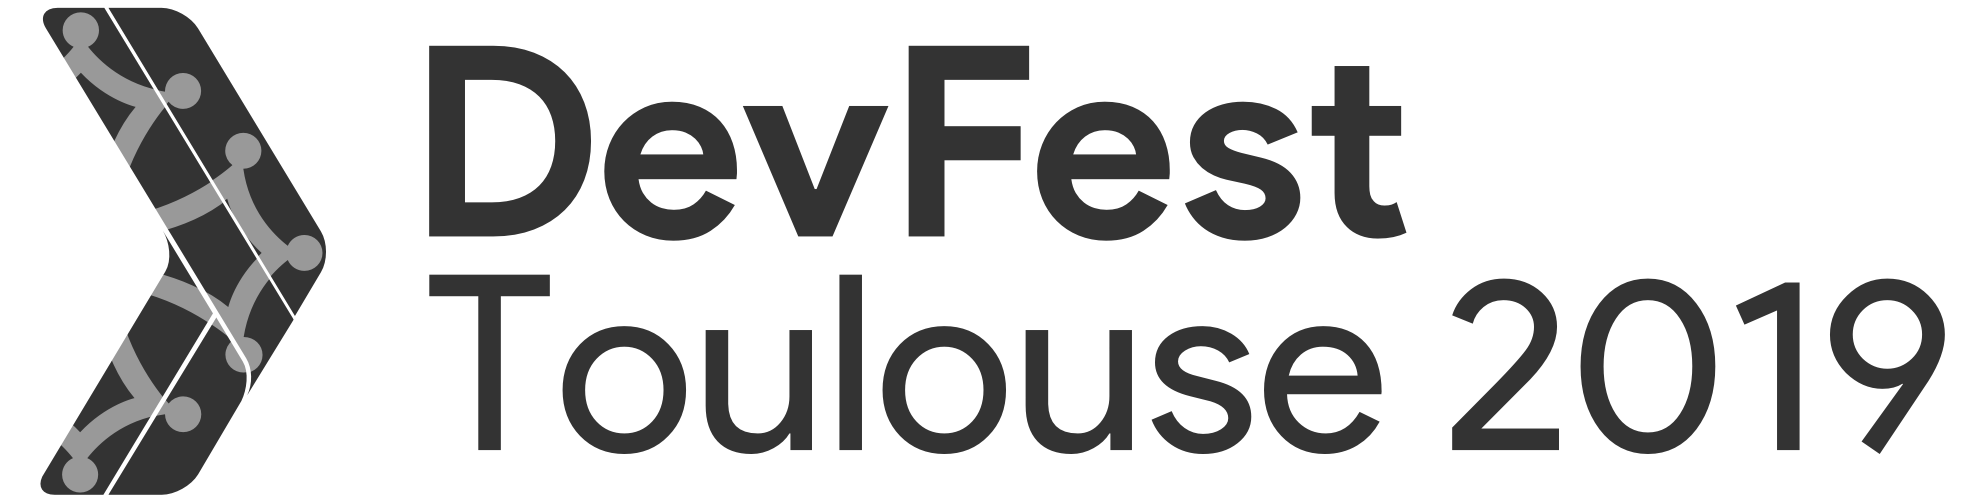 Devfest Toulouse 2019